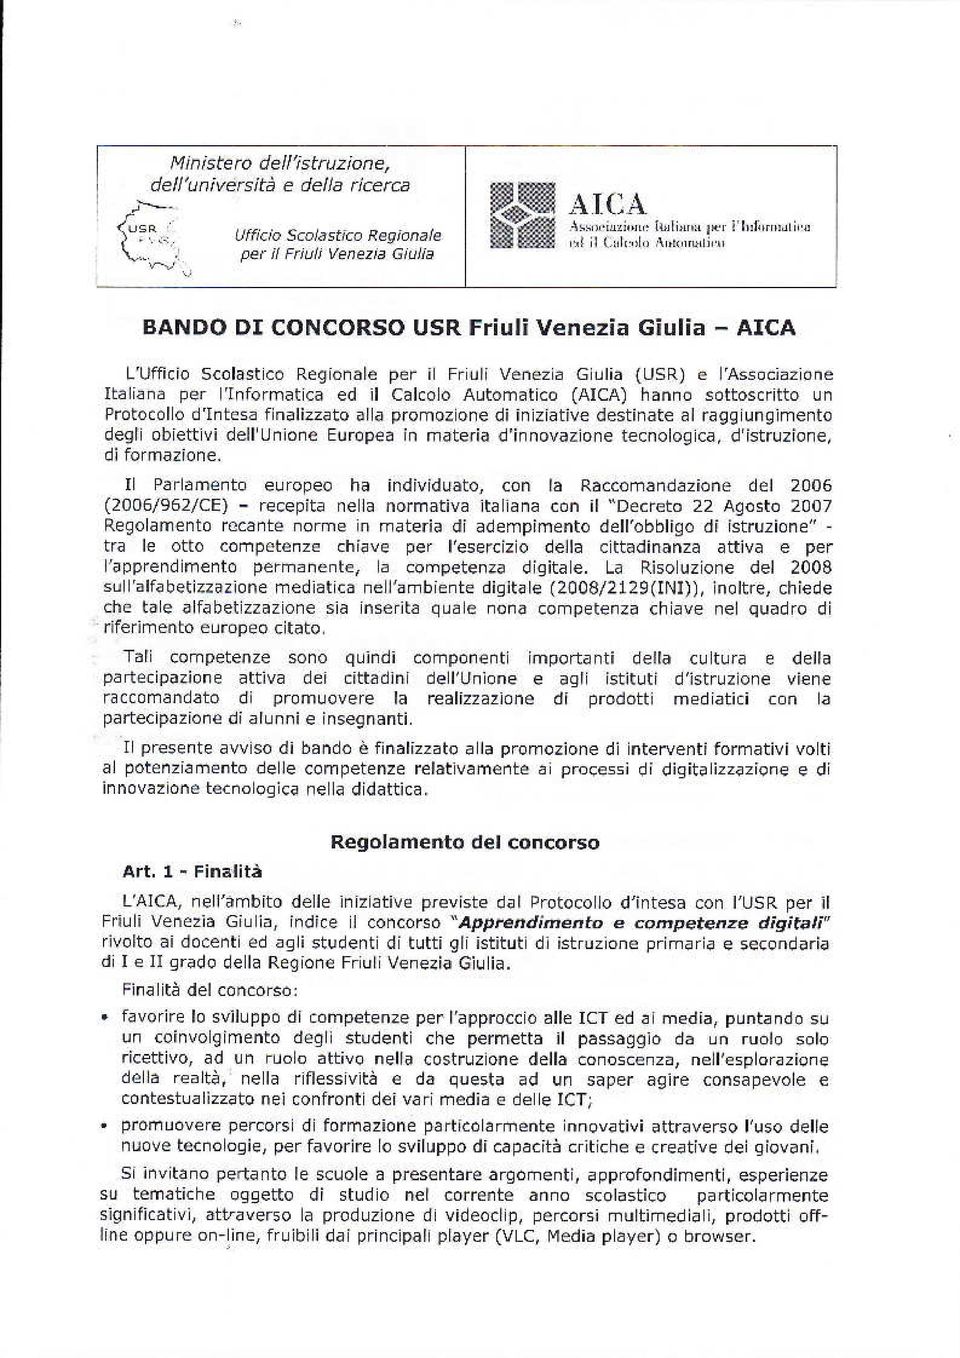 AICA L'Ufficio Scolastico Regionale per il Friuli Venezia Giulia (USR) e l'associazione Italiana per l'informatica ed il Calcolo Automatico (AICA) hanno sottoscritto un Protocollo d'intesa